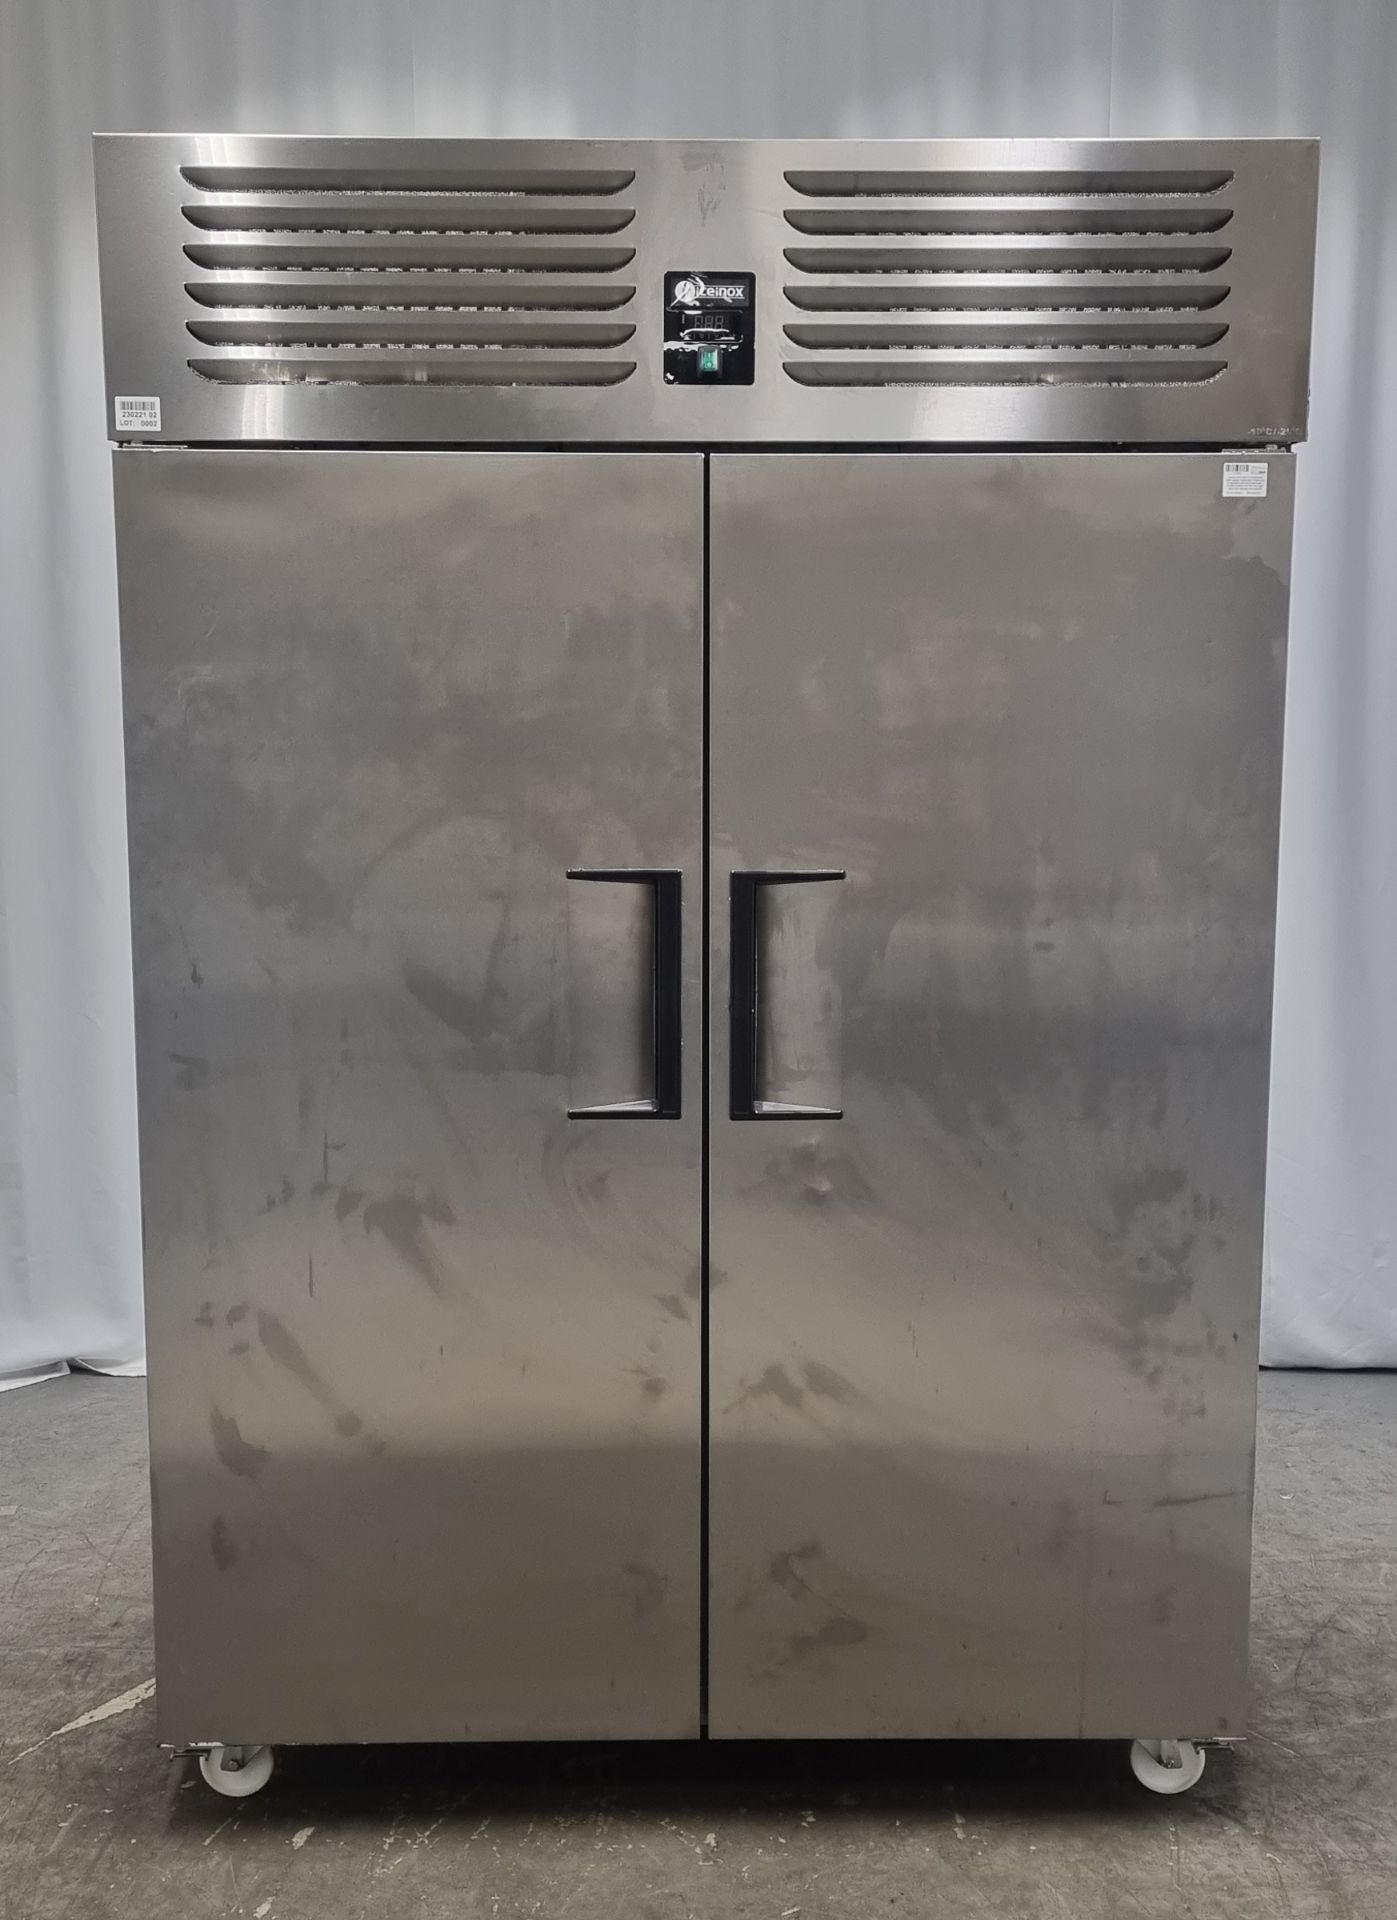 Iceinox VTS 1340 N CR stainless steel upright, double door freezer